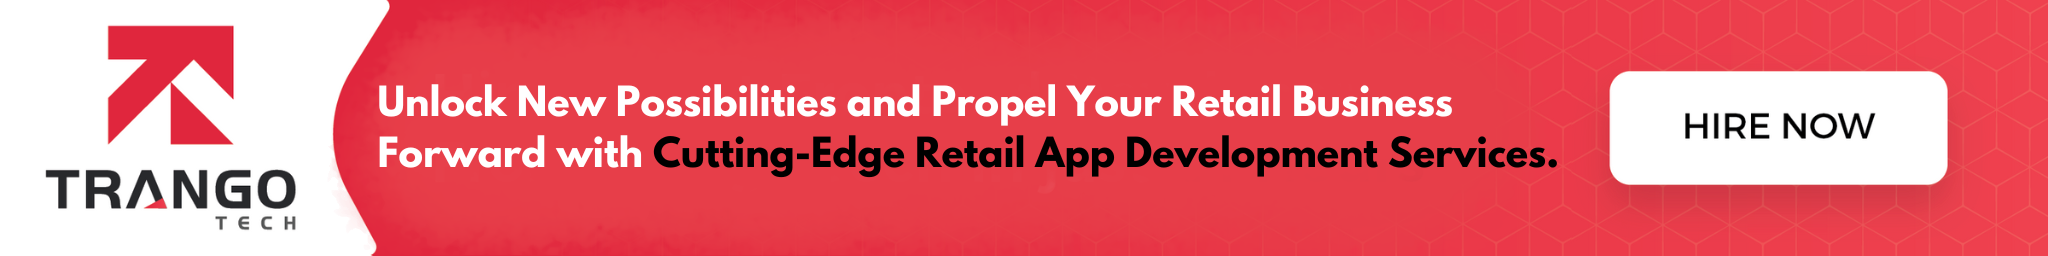 retail app development banner